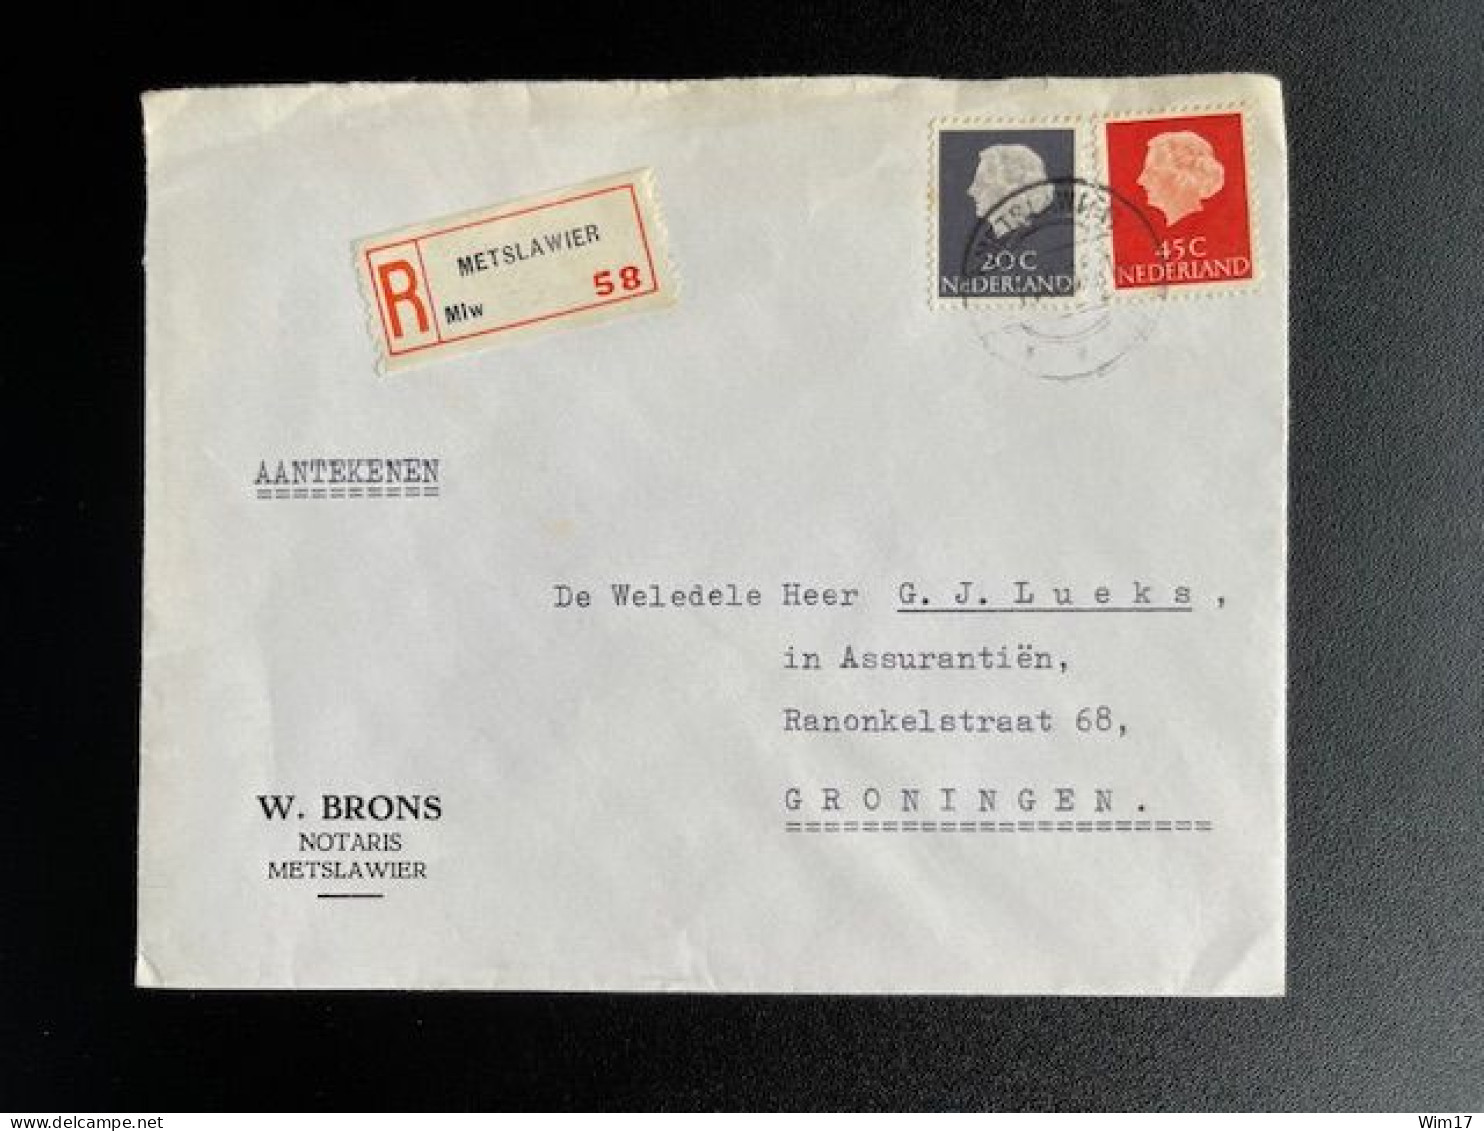 NETHERLANDS 1966 REGISTERED LETTER METSLAWIER TO GRONINGEN 01-11-1966 NEDERLAND AANGETEKEND - Storia Postale